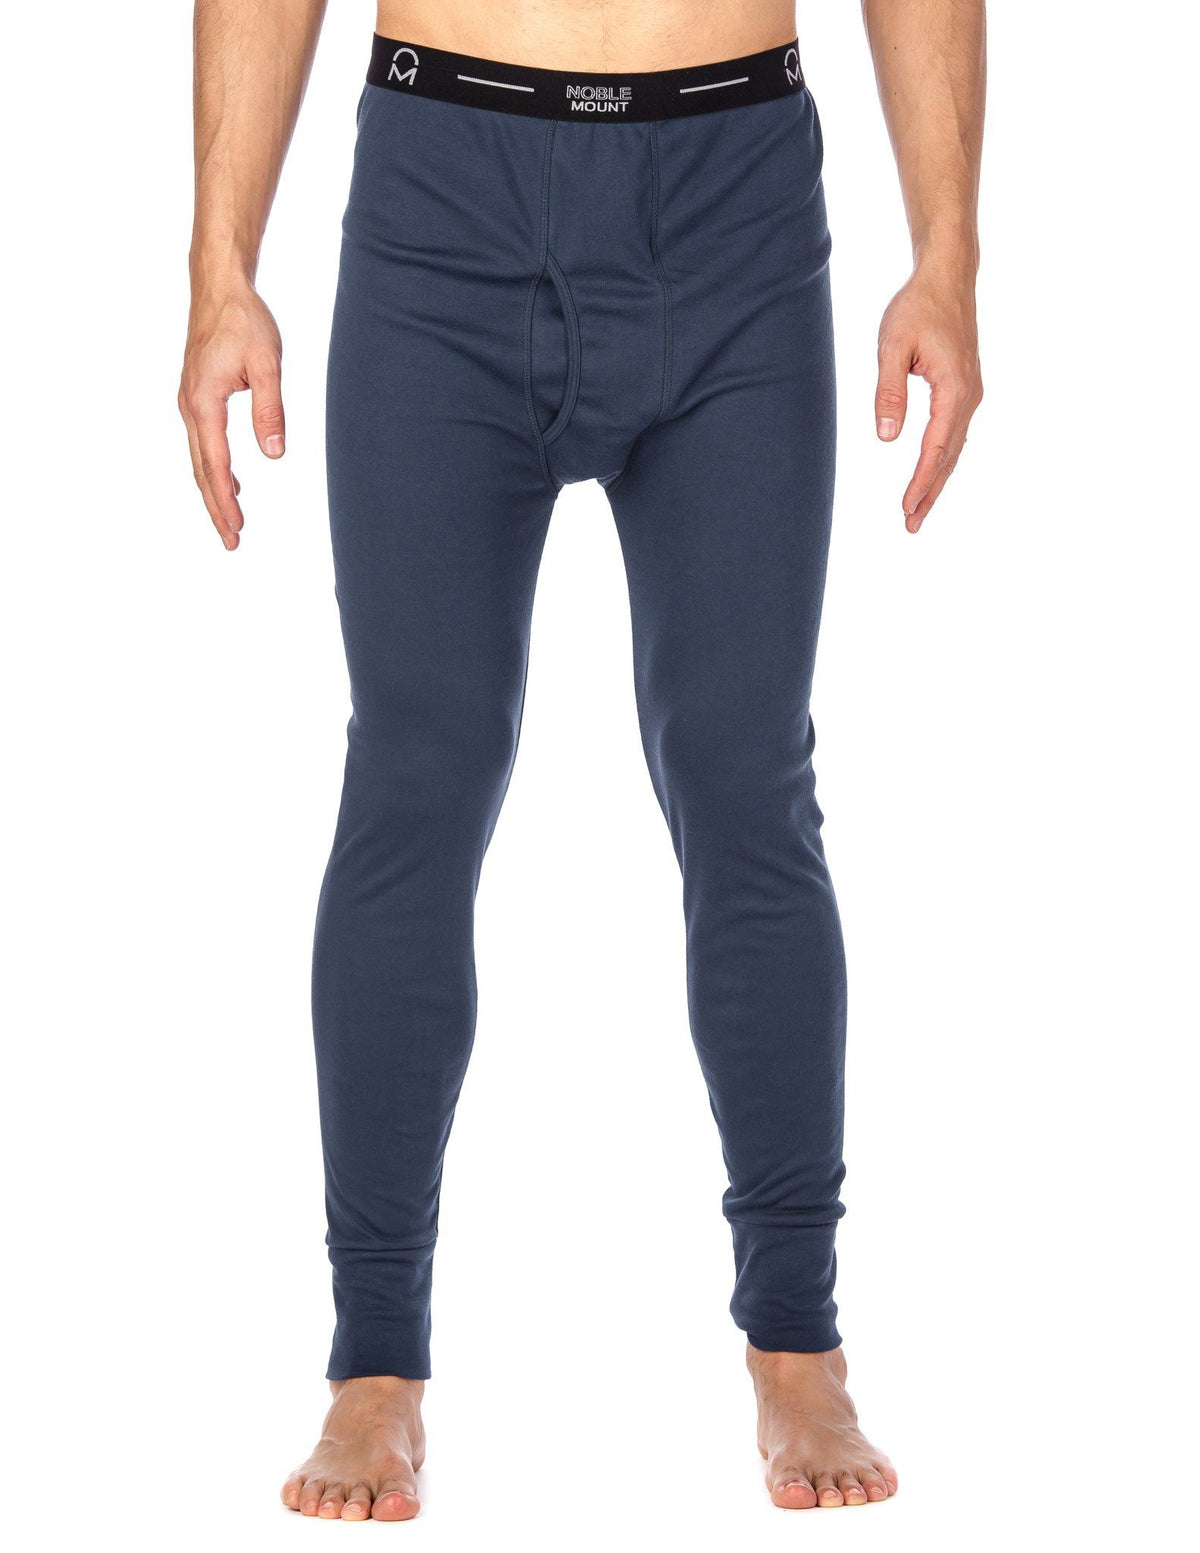 Men's 'Soft Comfort' Premium Thermal Long John Pants - Navy